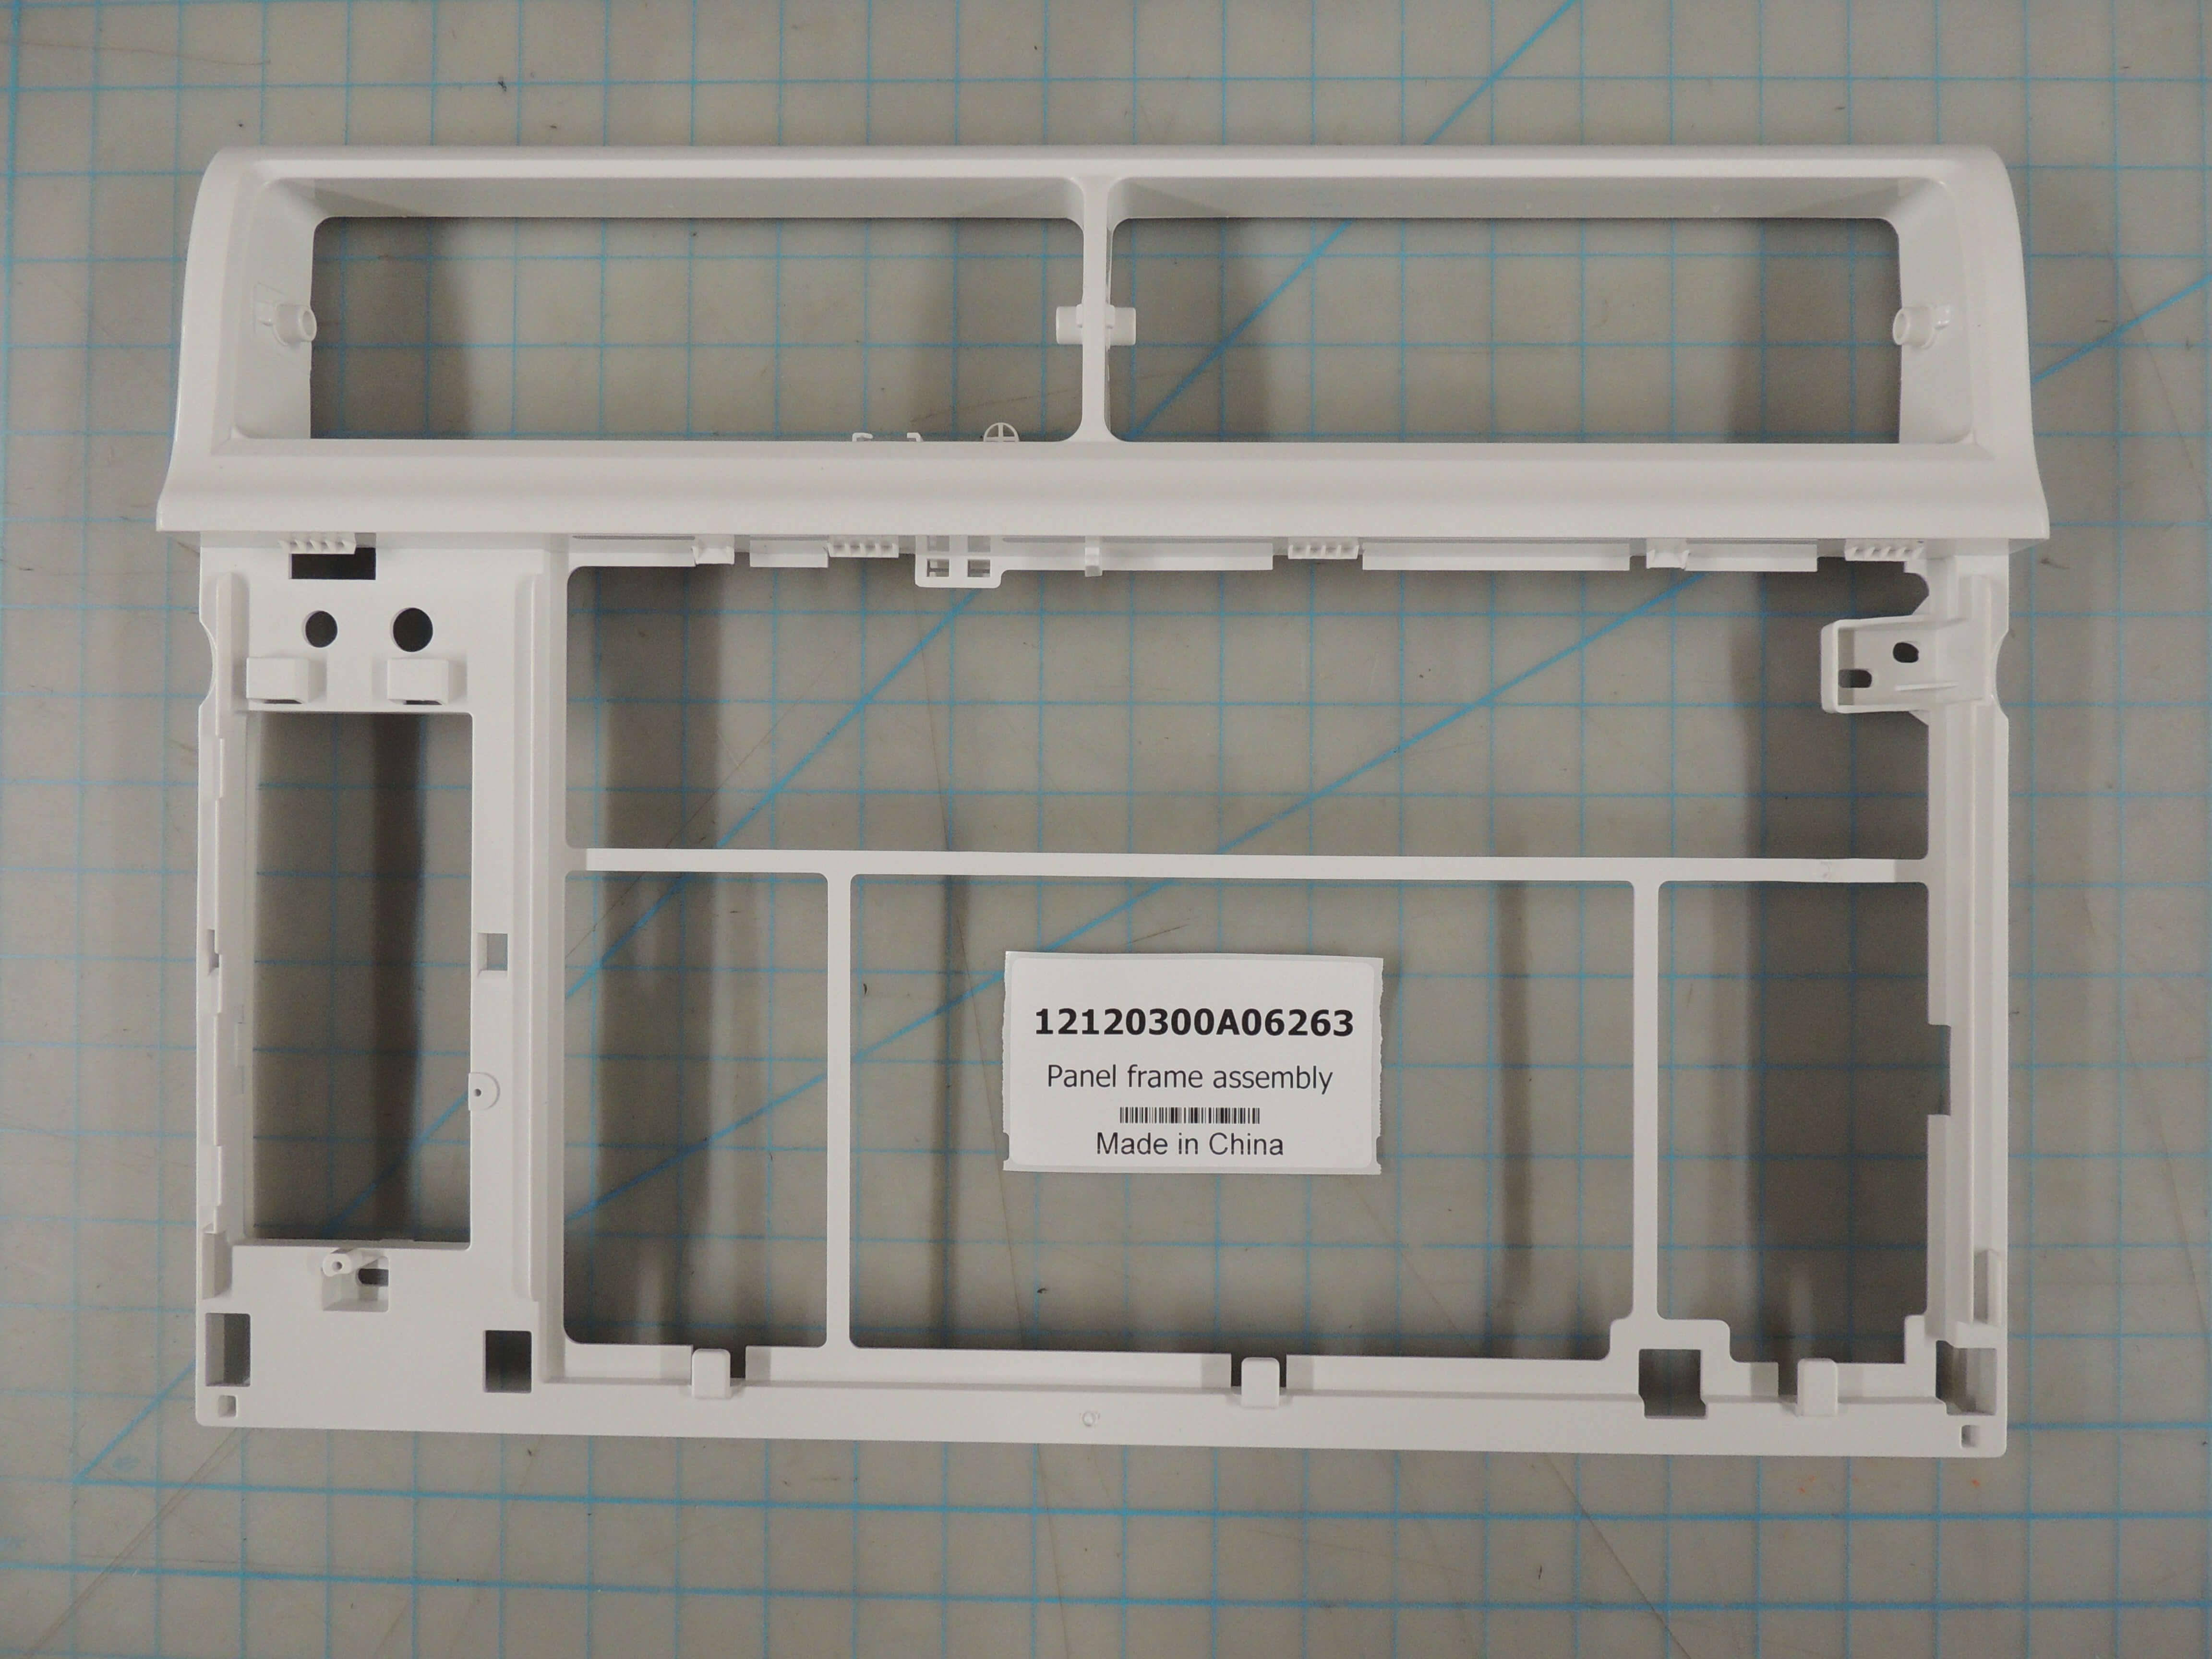 Panel frame assembly